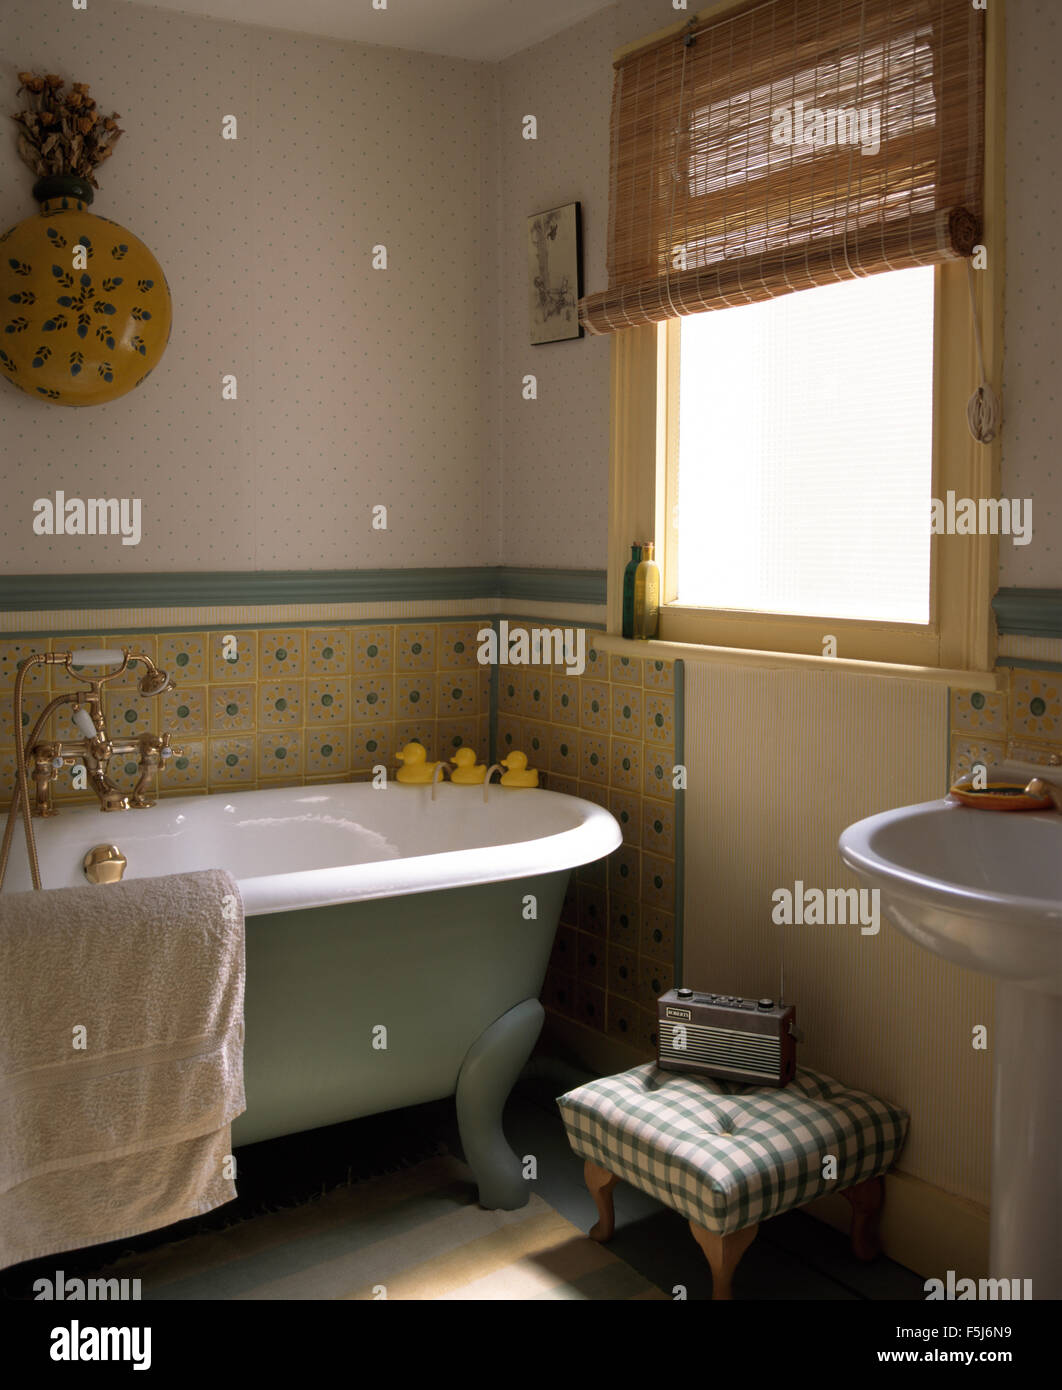 Piccolo Sgabello imbottito accanto a roll top bagno in un tradizionale bagno con pinoleum cieco sulla finestra Foto Stock